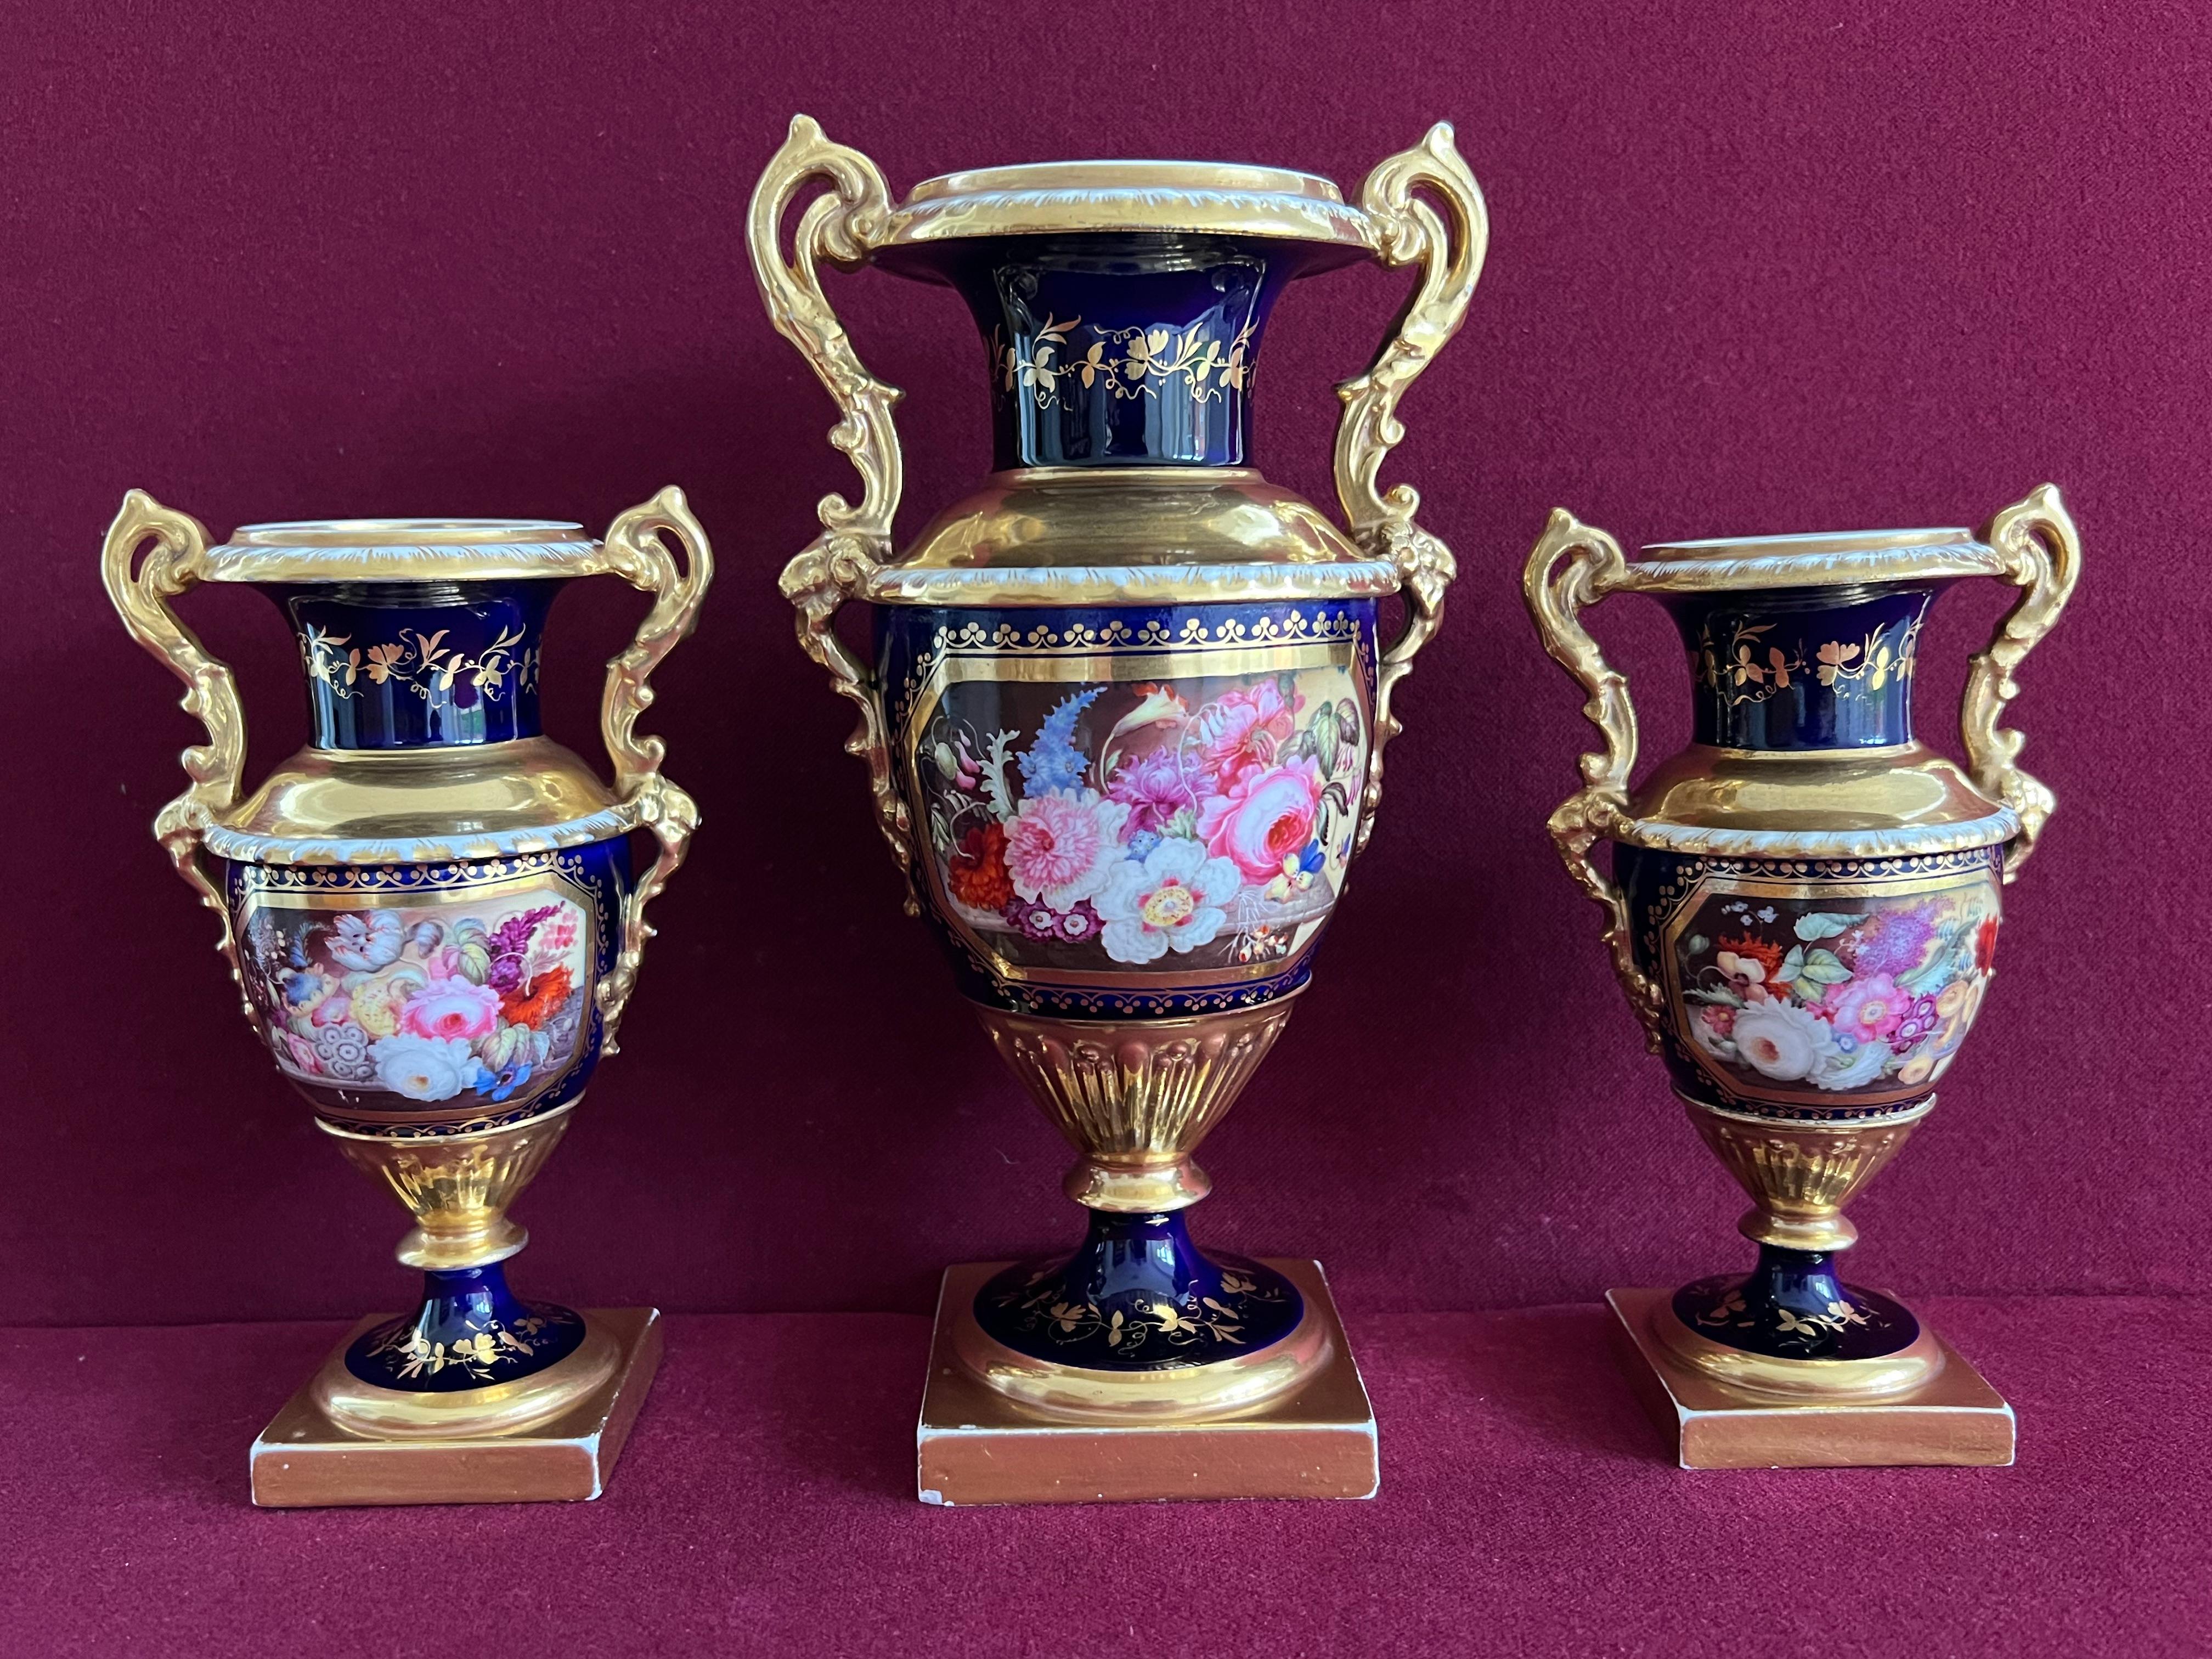 Garniture de vases en porcelaine de Minton décorés par Thomas Steele vers 1830. Chaque vase, de forme Elgin, est finement décoré d'un panneau de fleurs sur une table de marbre par Thomas Steel. Marques : Signe + sur un cercle en or.

Condit :